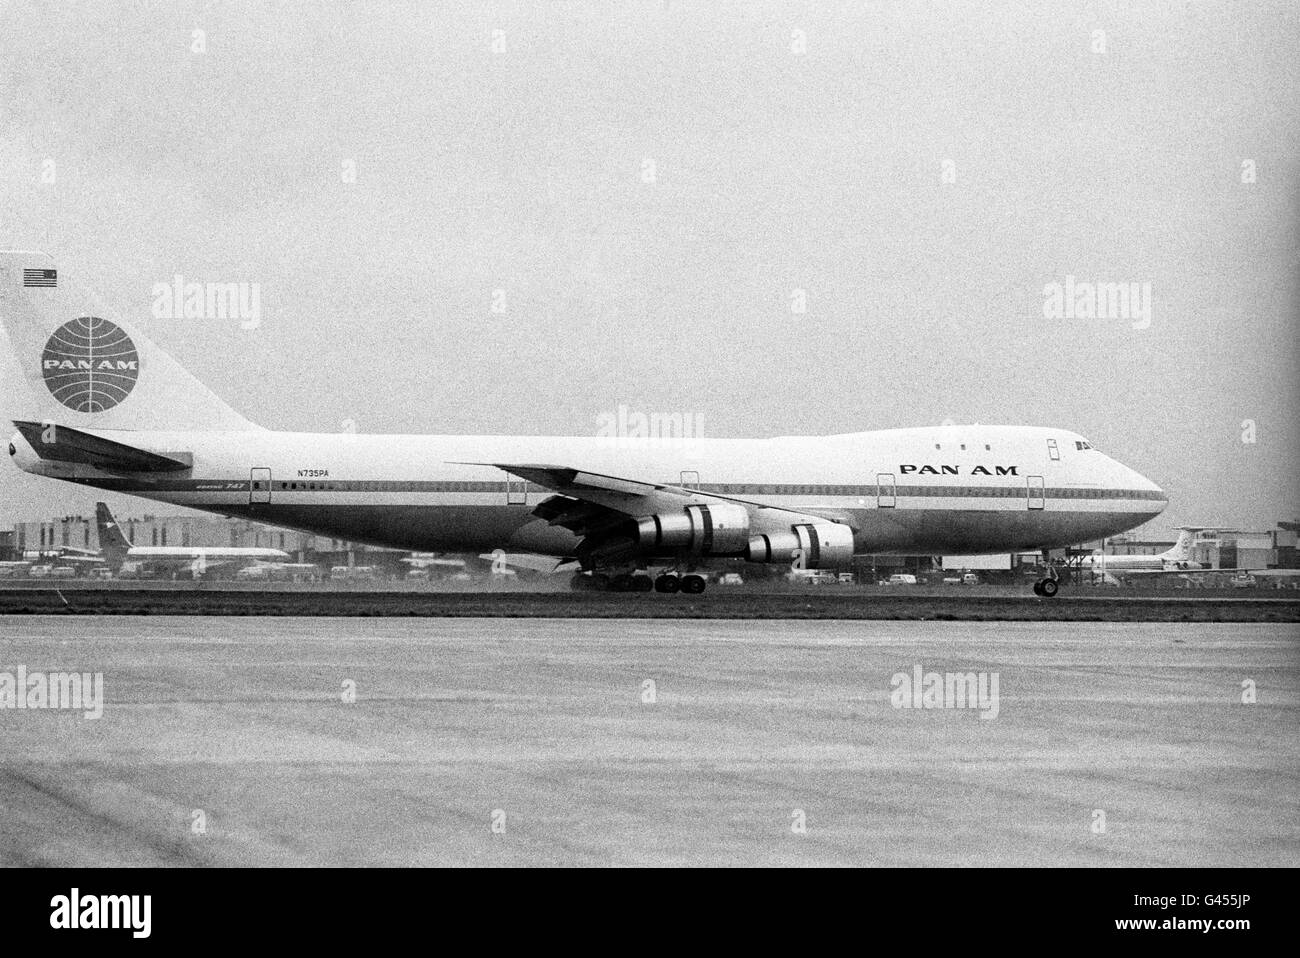 Il primo Boeing 747 Jumbo Jet atterra all'aeroporto di Heathrow sulla pista. Tra i 361 passeggeri del volo panamericano c'erano il personale delle compagnie aeree e alcune famiglie e funzionari dell'Agenzia federale dell'aviazione americana. L'enorme aeromobile è arrivato con tre ore di ritardo a causa di un cambio di motore e di un ingorgo all'aeroporto JFK di New York. Foto Stock